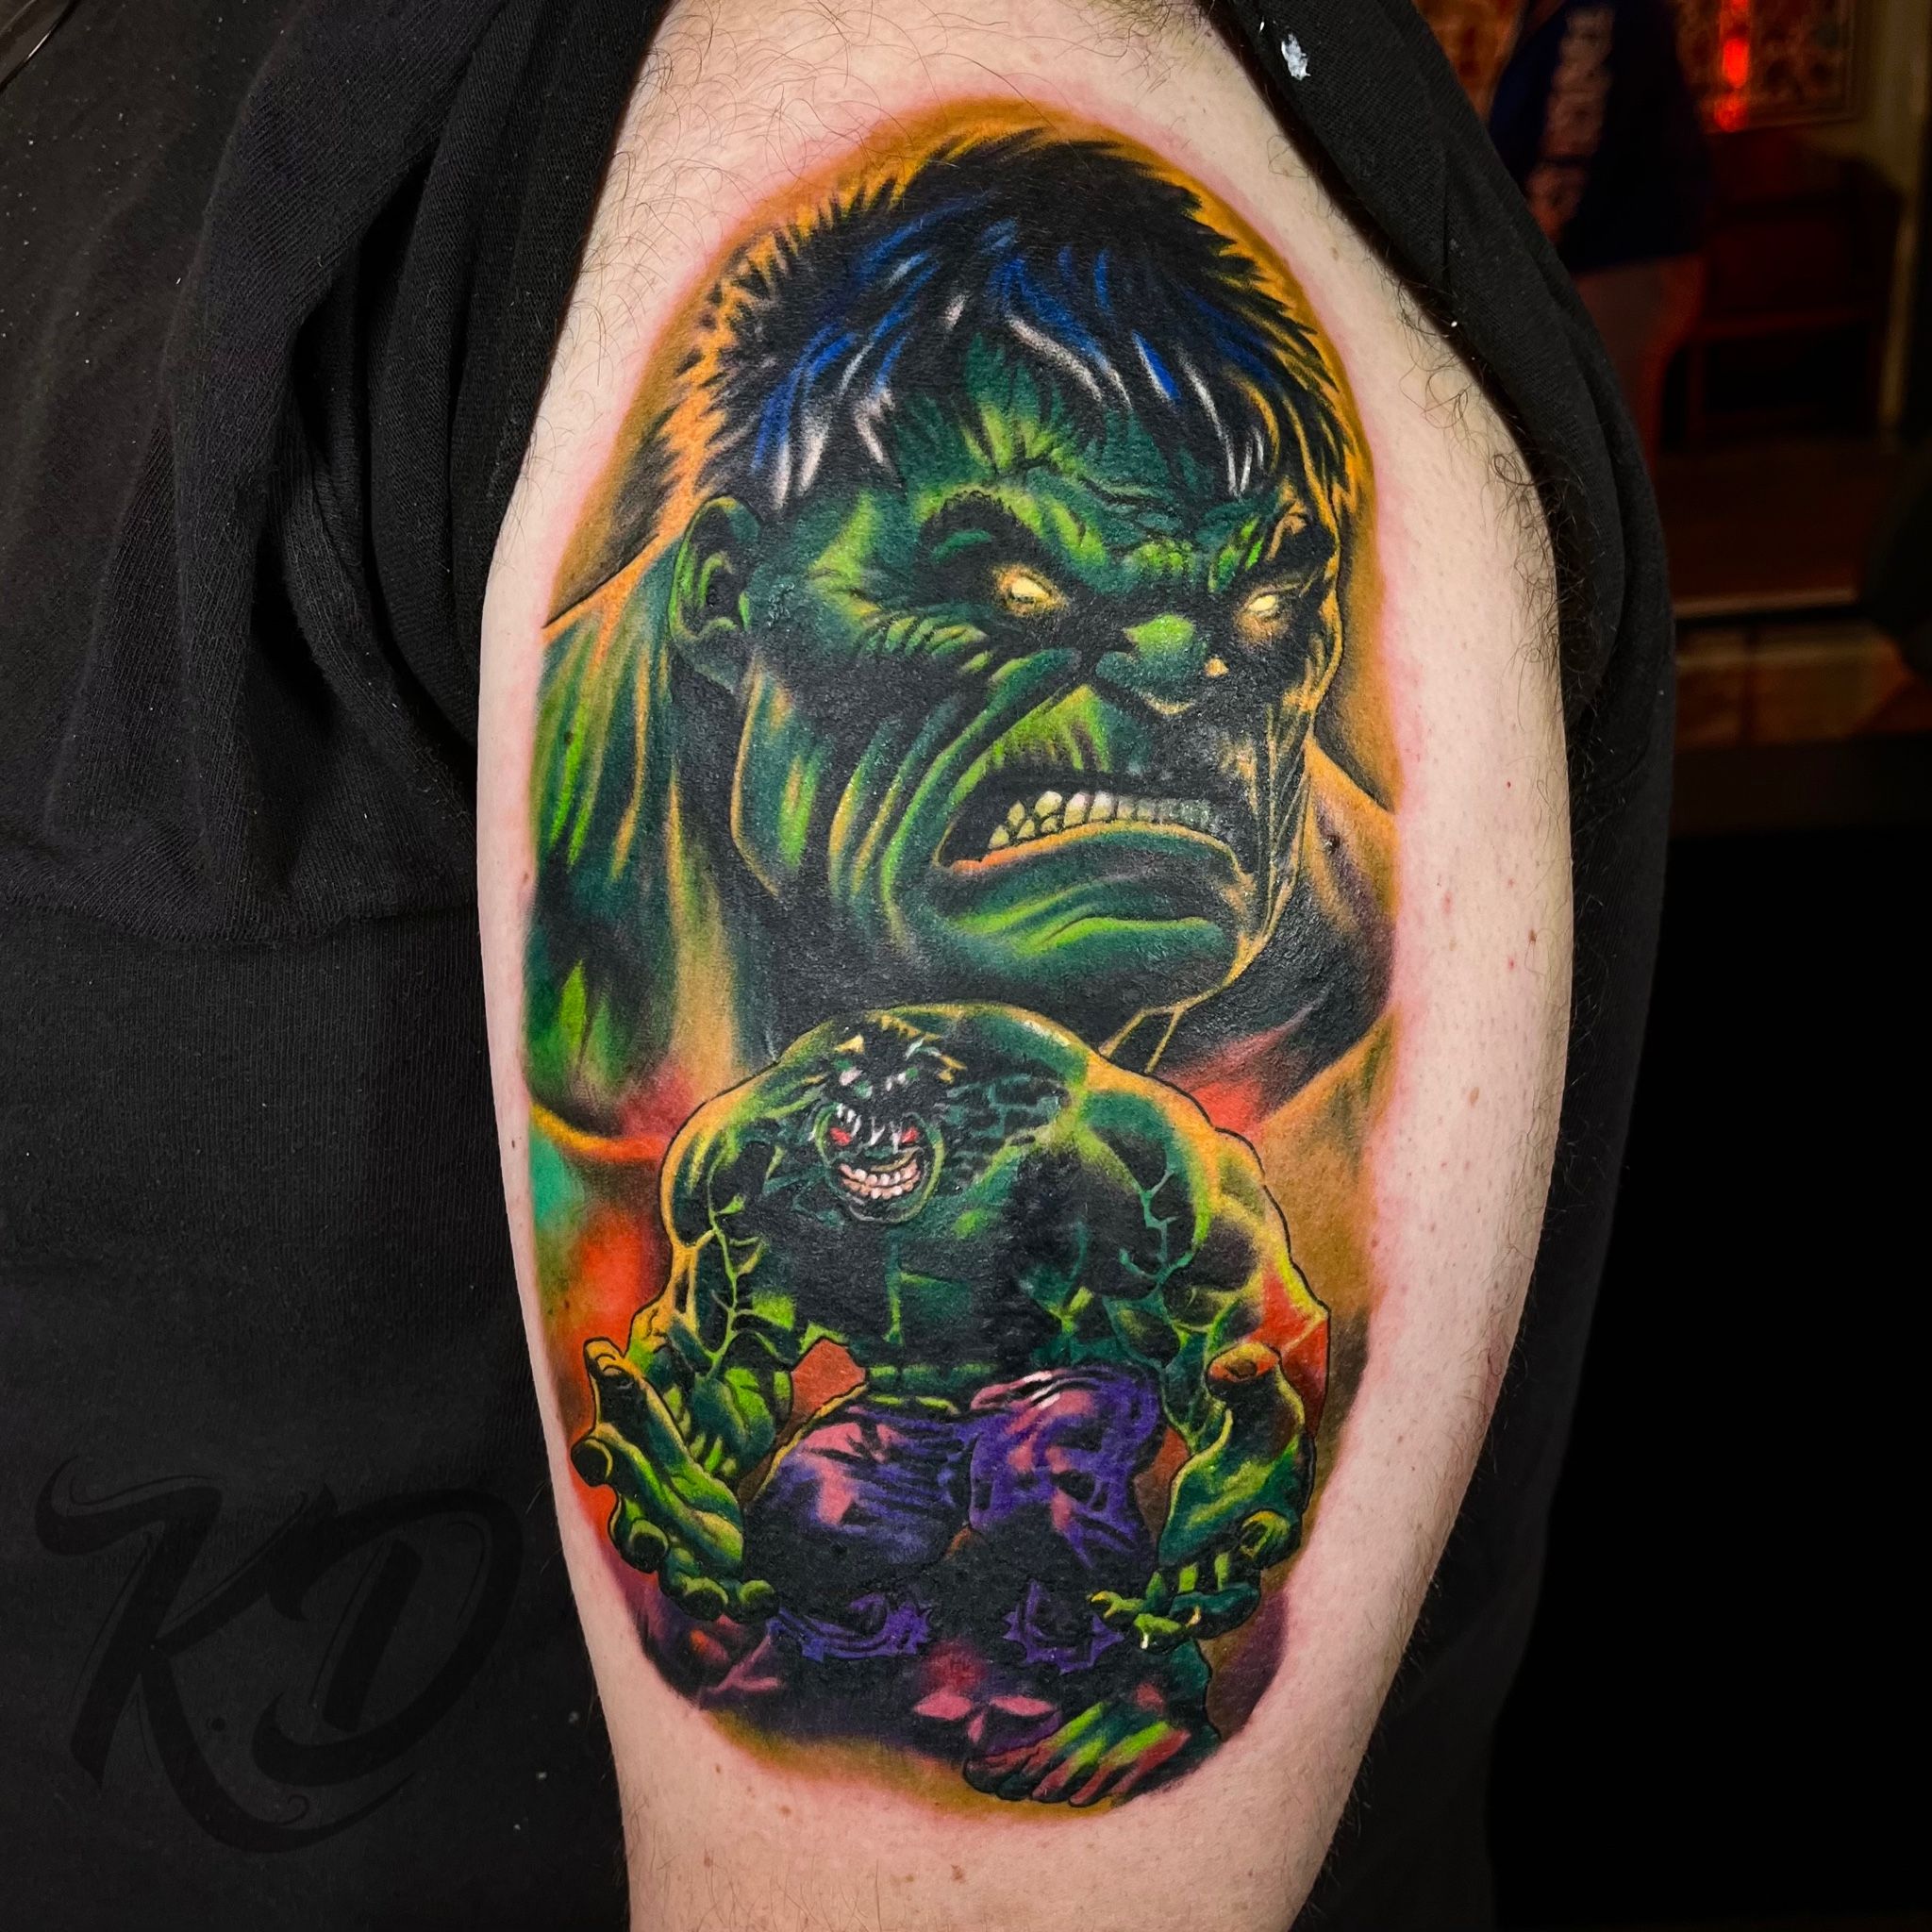 3D Hulk Tattoo - Best Tattoo Ideas Gallery